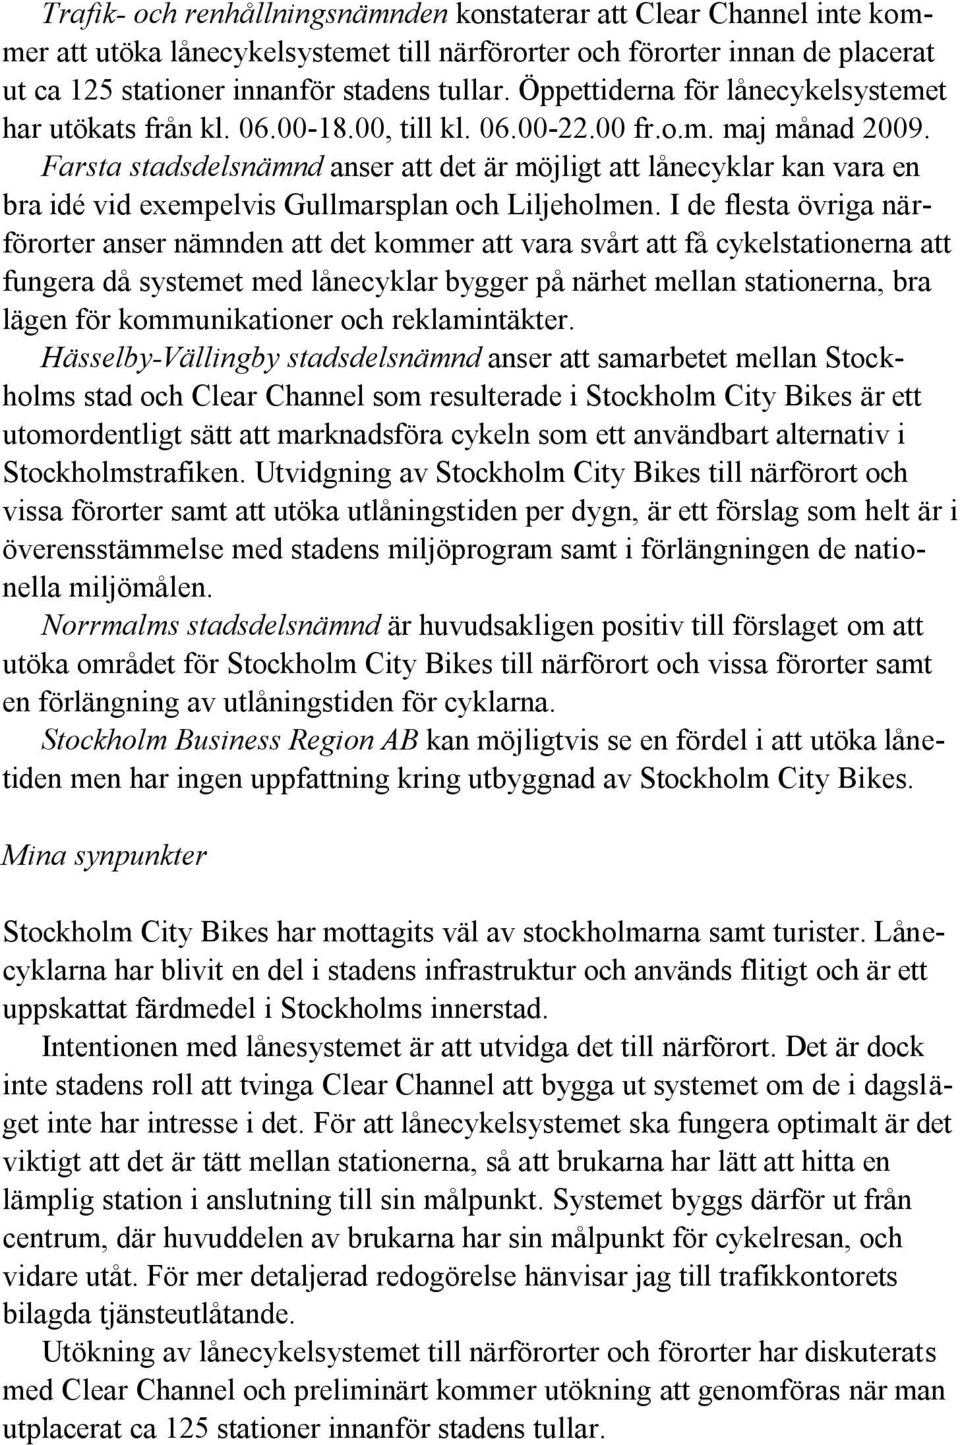 Farsta stadsdelsnämnd anser att det är möjligt att lånecyklar kan vara en bra idé vid exempelvis Gullmarsplan och Liljeholmen.